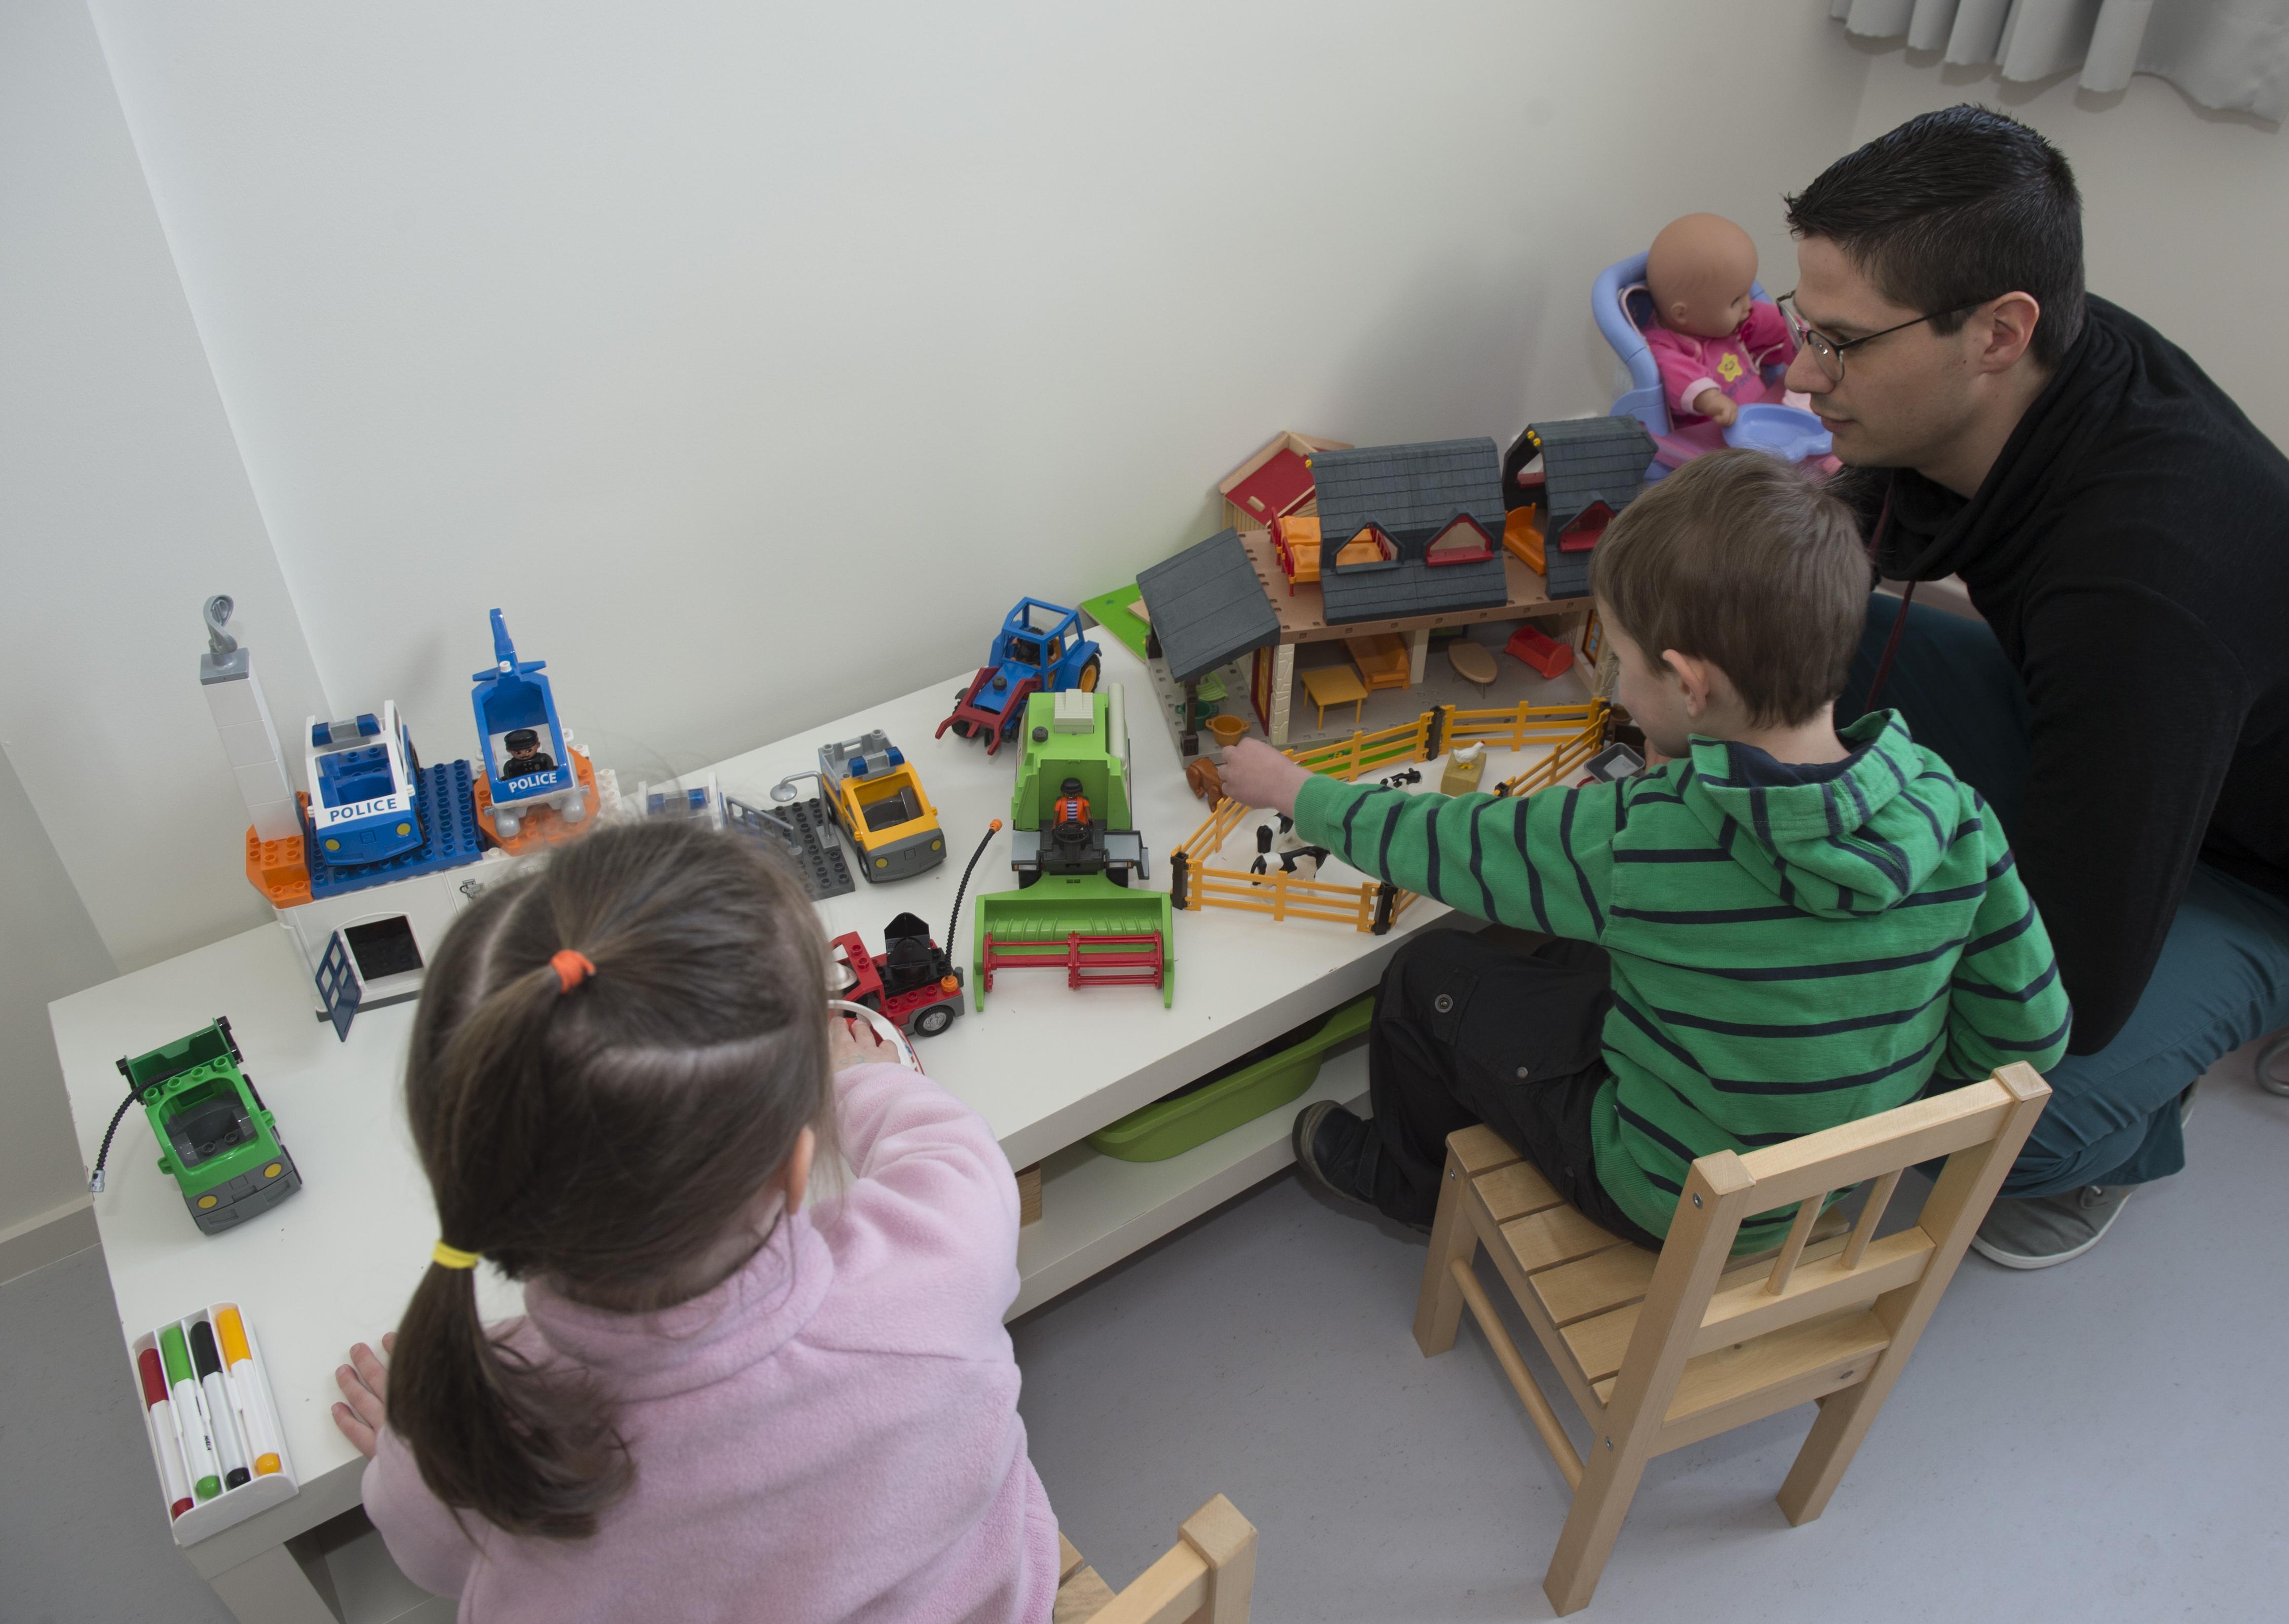 Een man die een jongen en een meisje observeert terwijl ze met speelgoed op een tafel spelen.